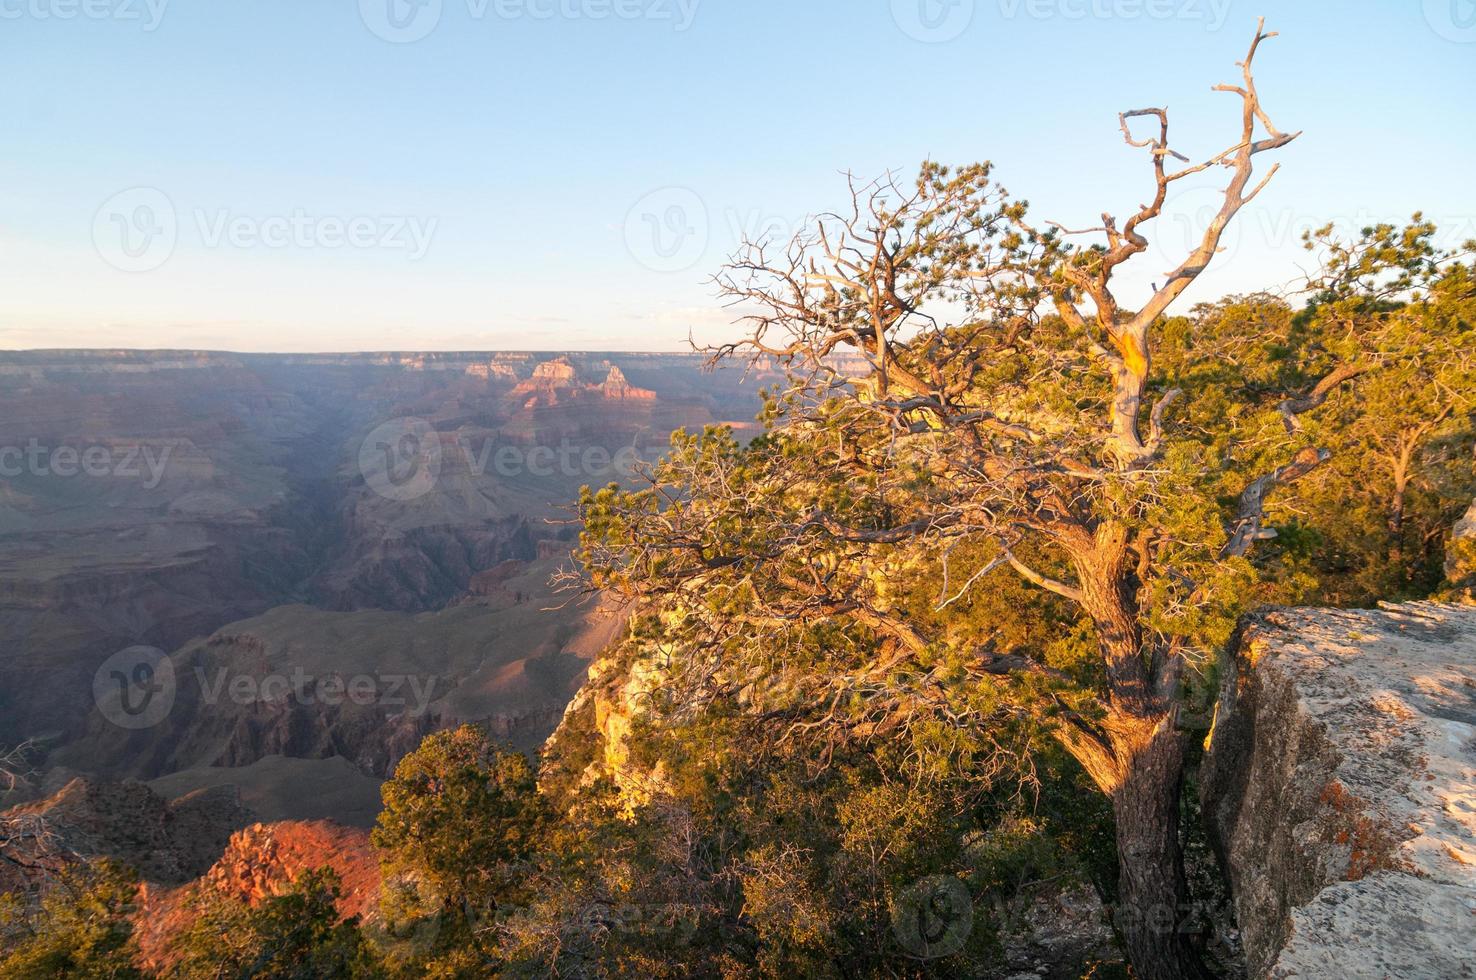 parc national du grand canyon depuis le bord. photo